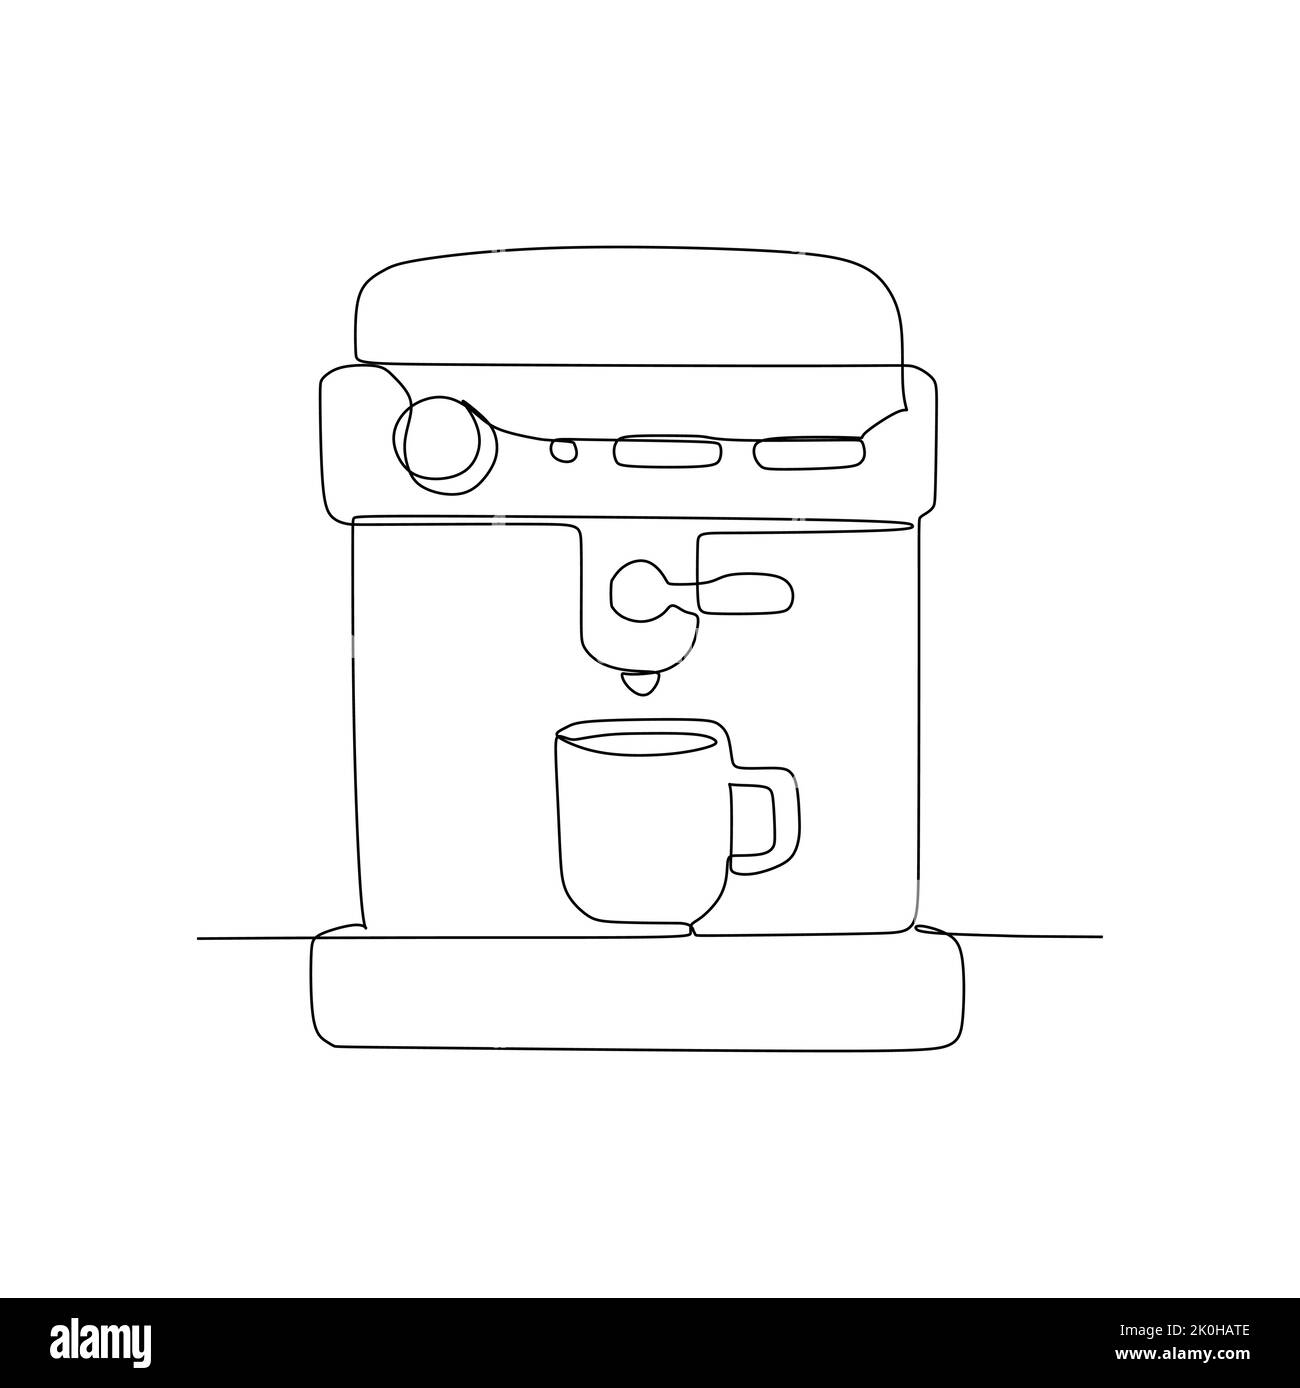 Nuova macchina per caffè espresso elettrica - caffè Frappuccino in una tazza di plastica con cannuccia. Illustrazione vettoriale a linea singola continua disegnata a mano sty Illustrazione Vettoriale